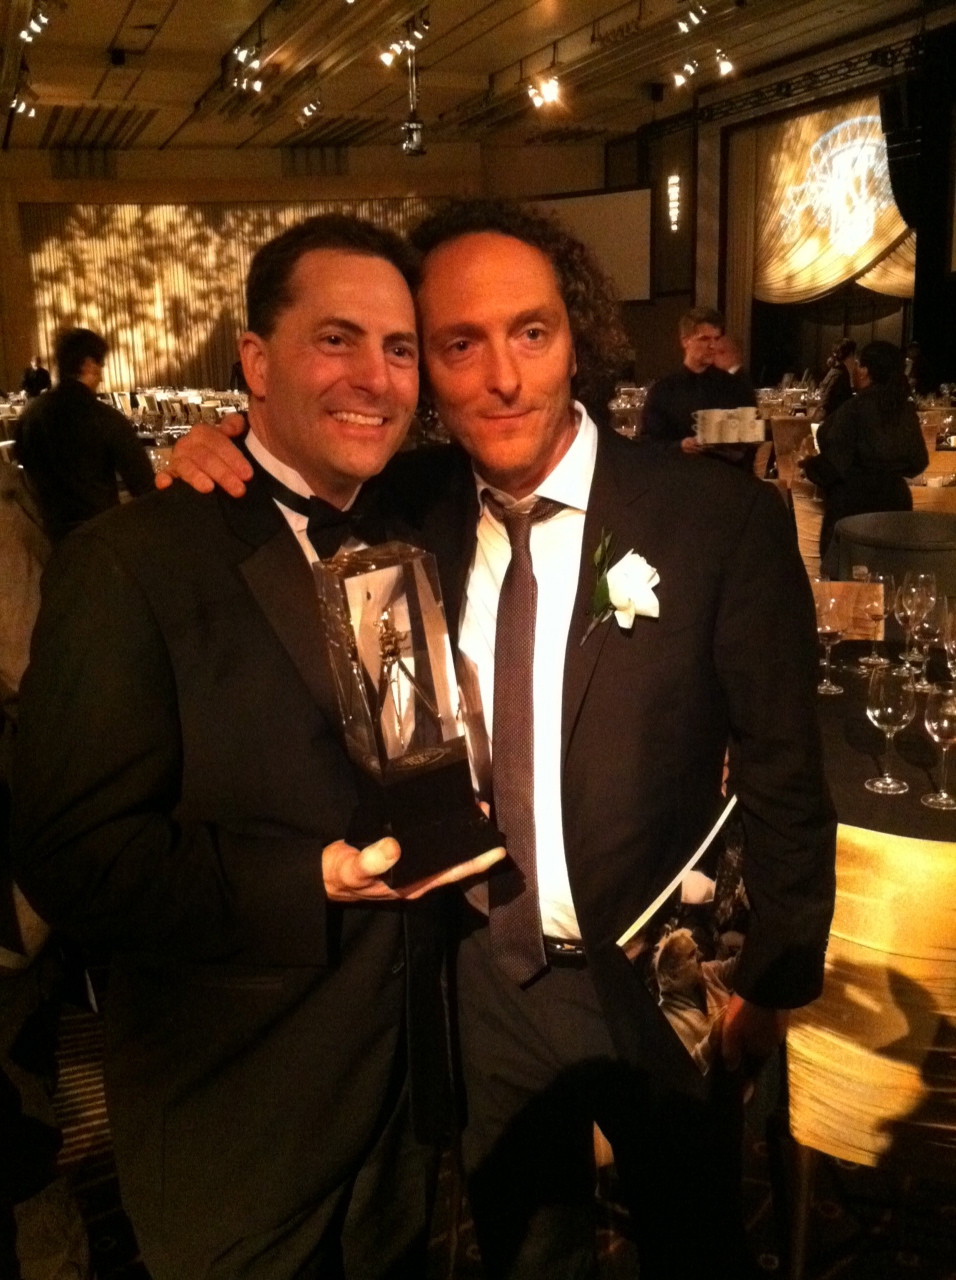 Erik L. Brown & Emmanuel Lubezki at the 2011 ASC awards